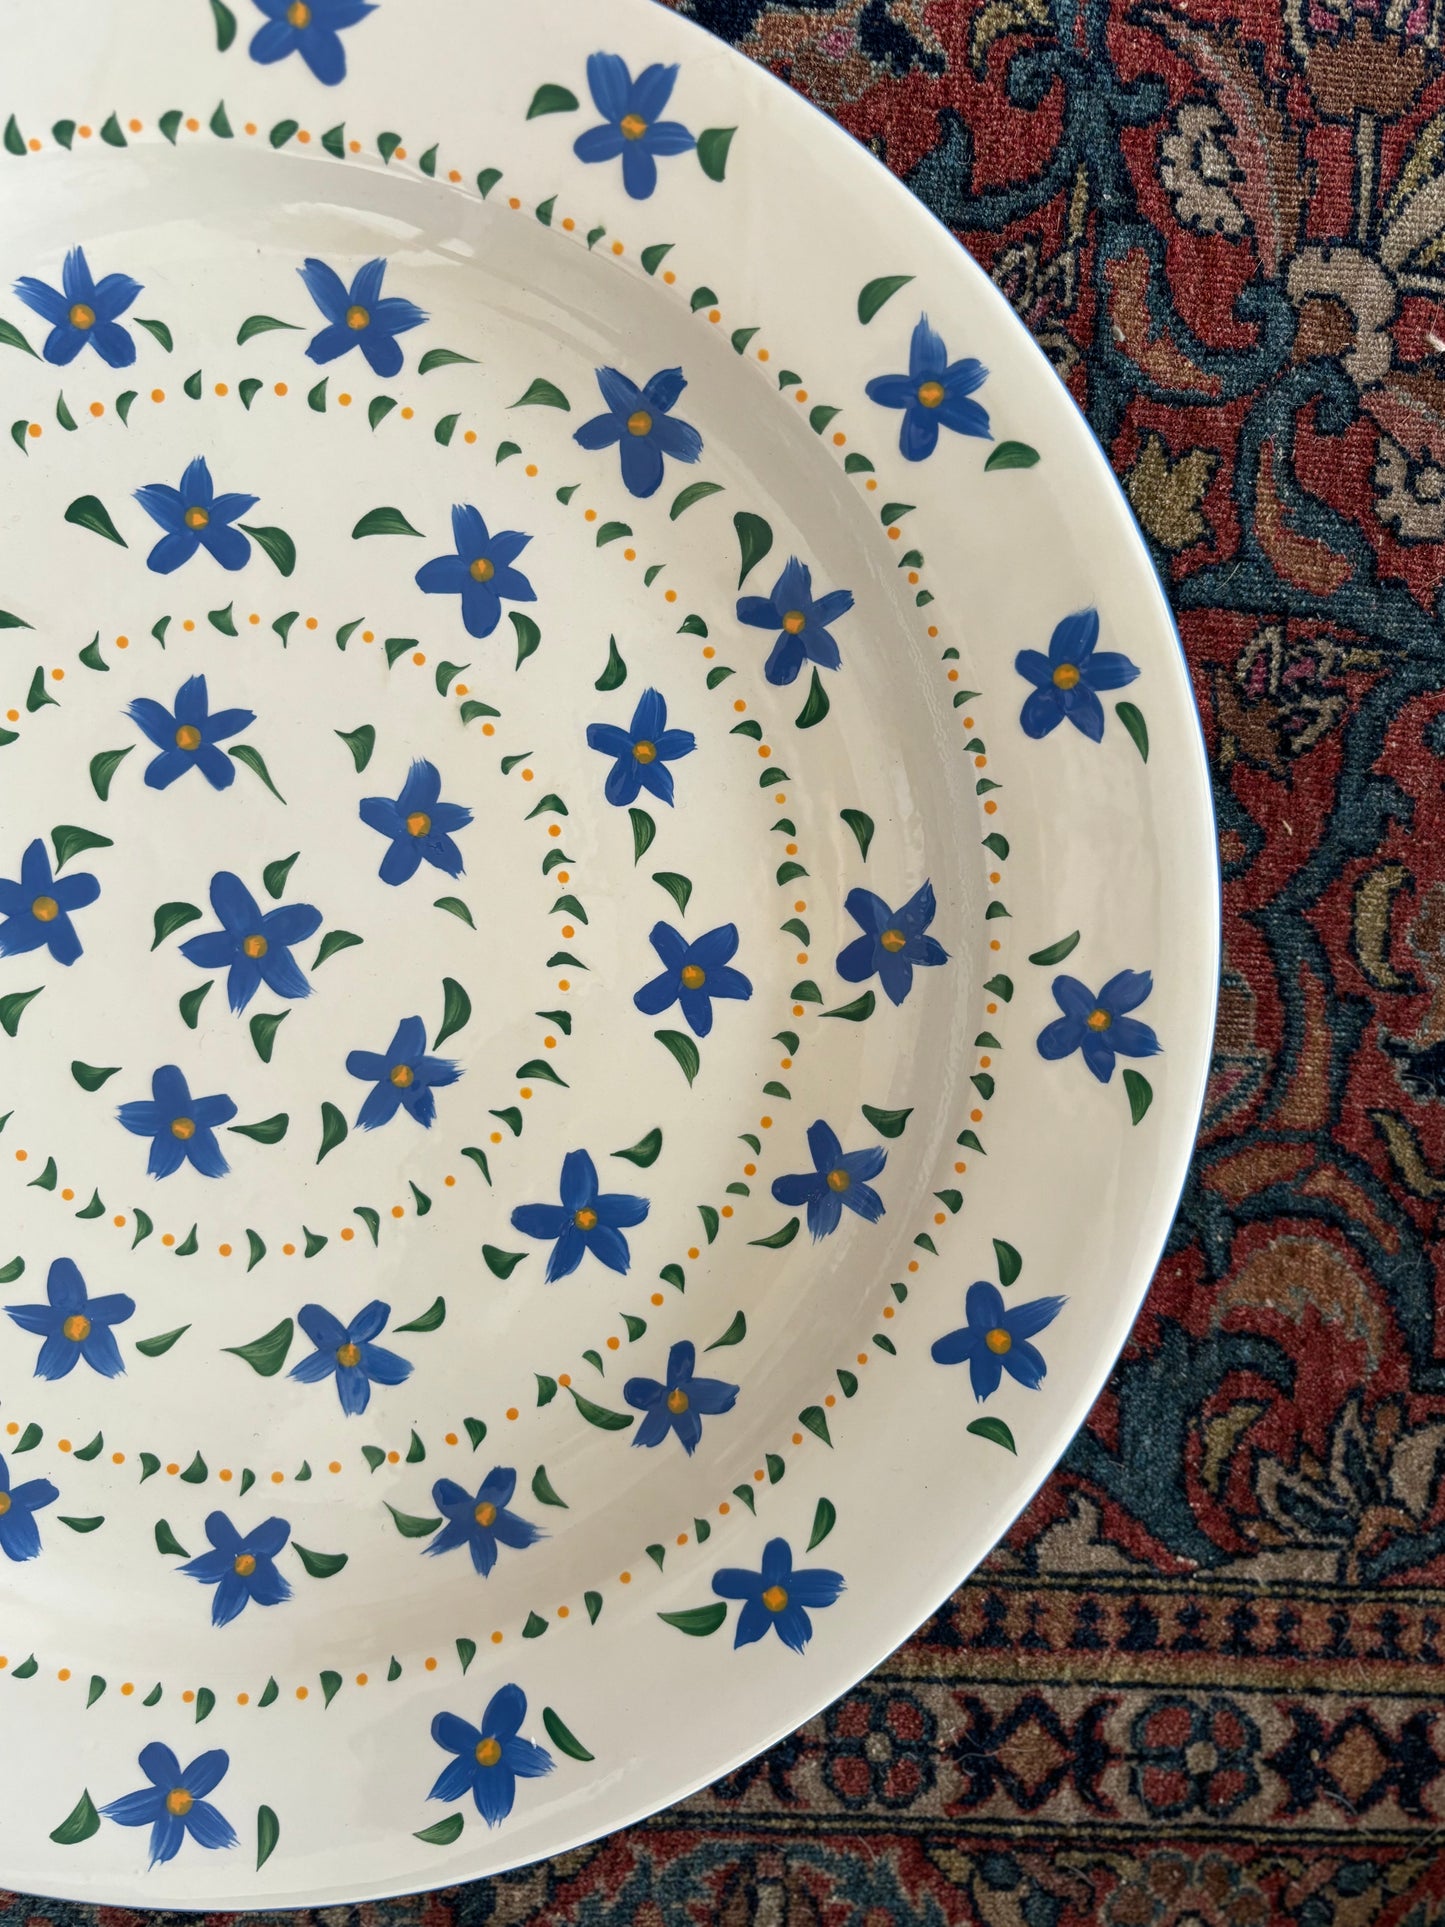 Blue Floral Platter